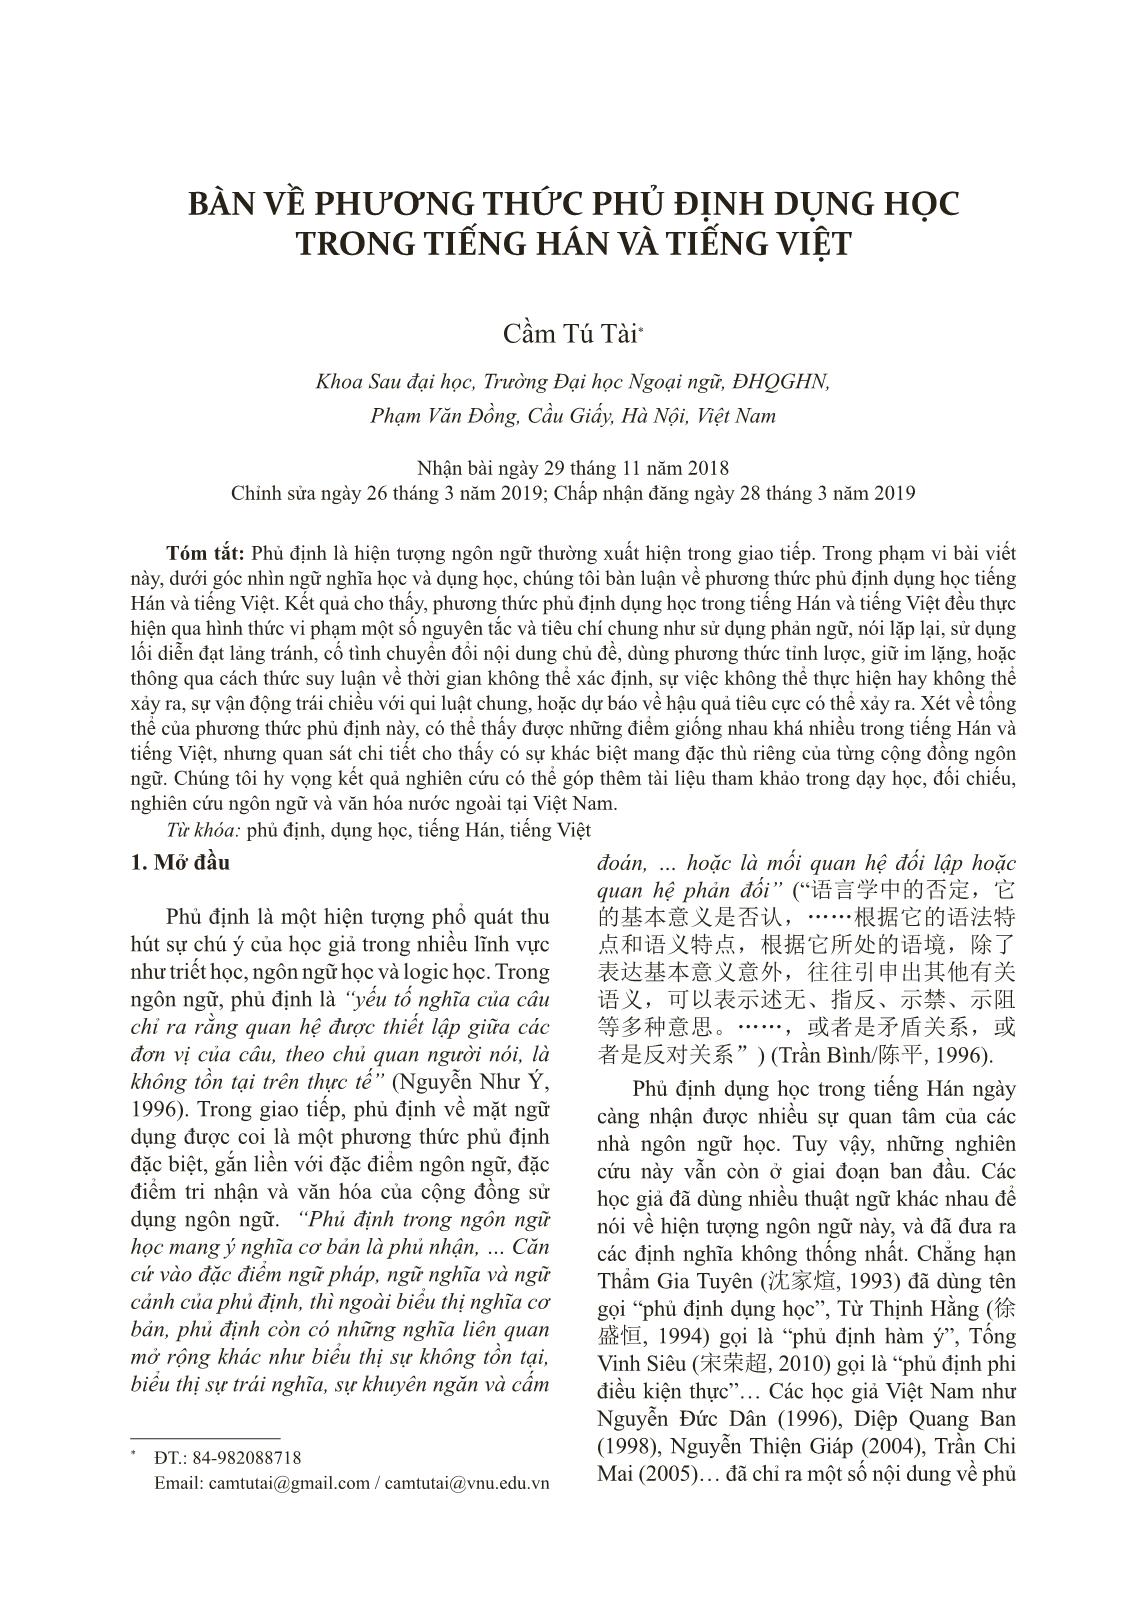 Bàn về phương thức phủ định dụng học trong tiếng Hán và tiếng Việt trang 1